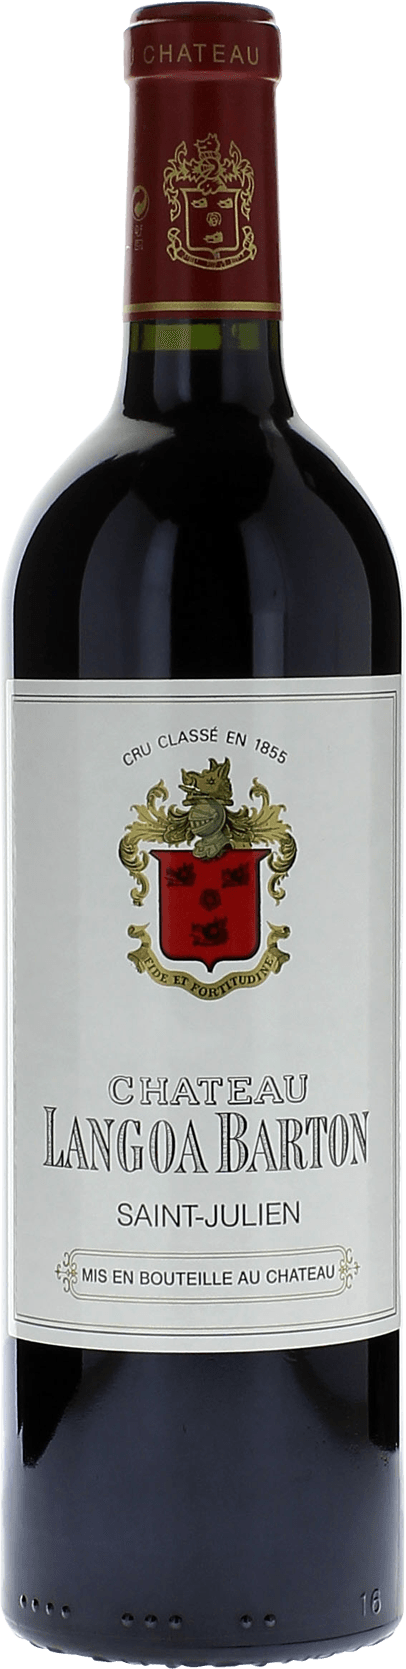 Langoa barton 2016 3me Grand cru class Saint-Julien, Bordeaux rouge